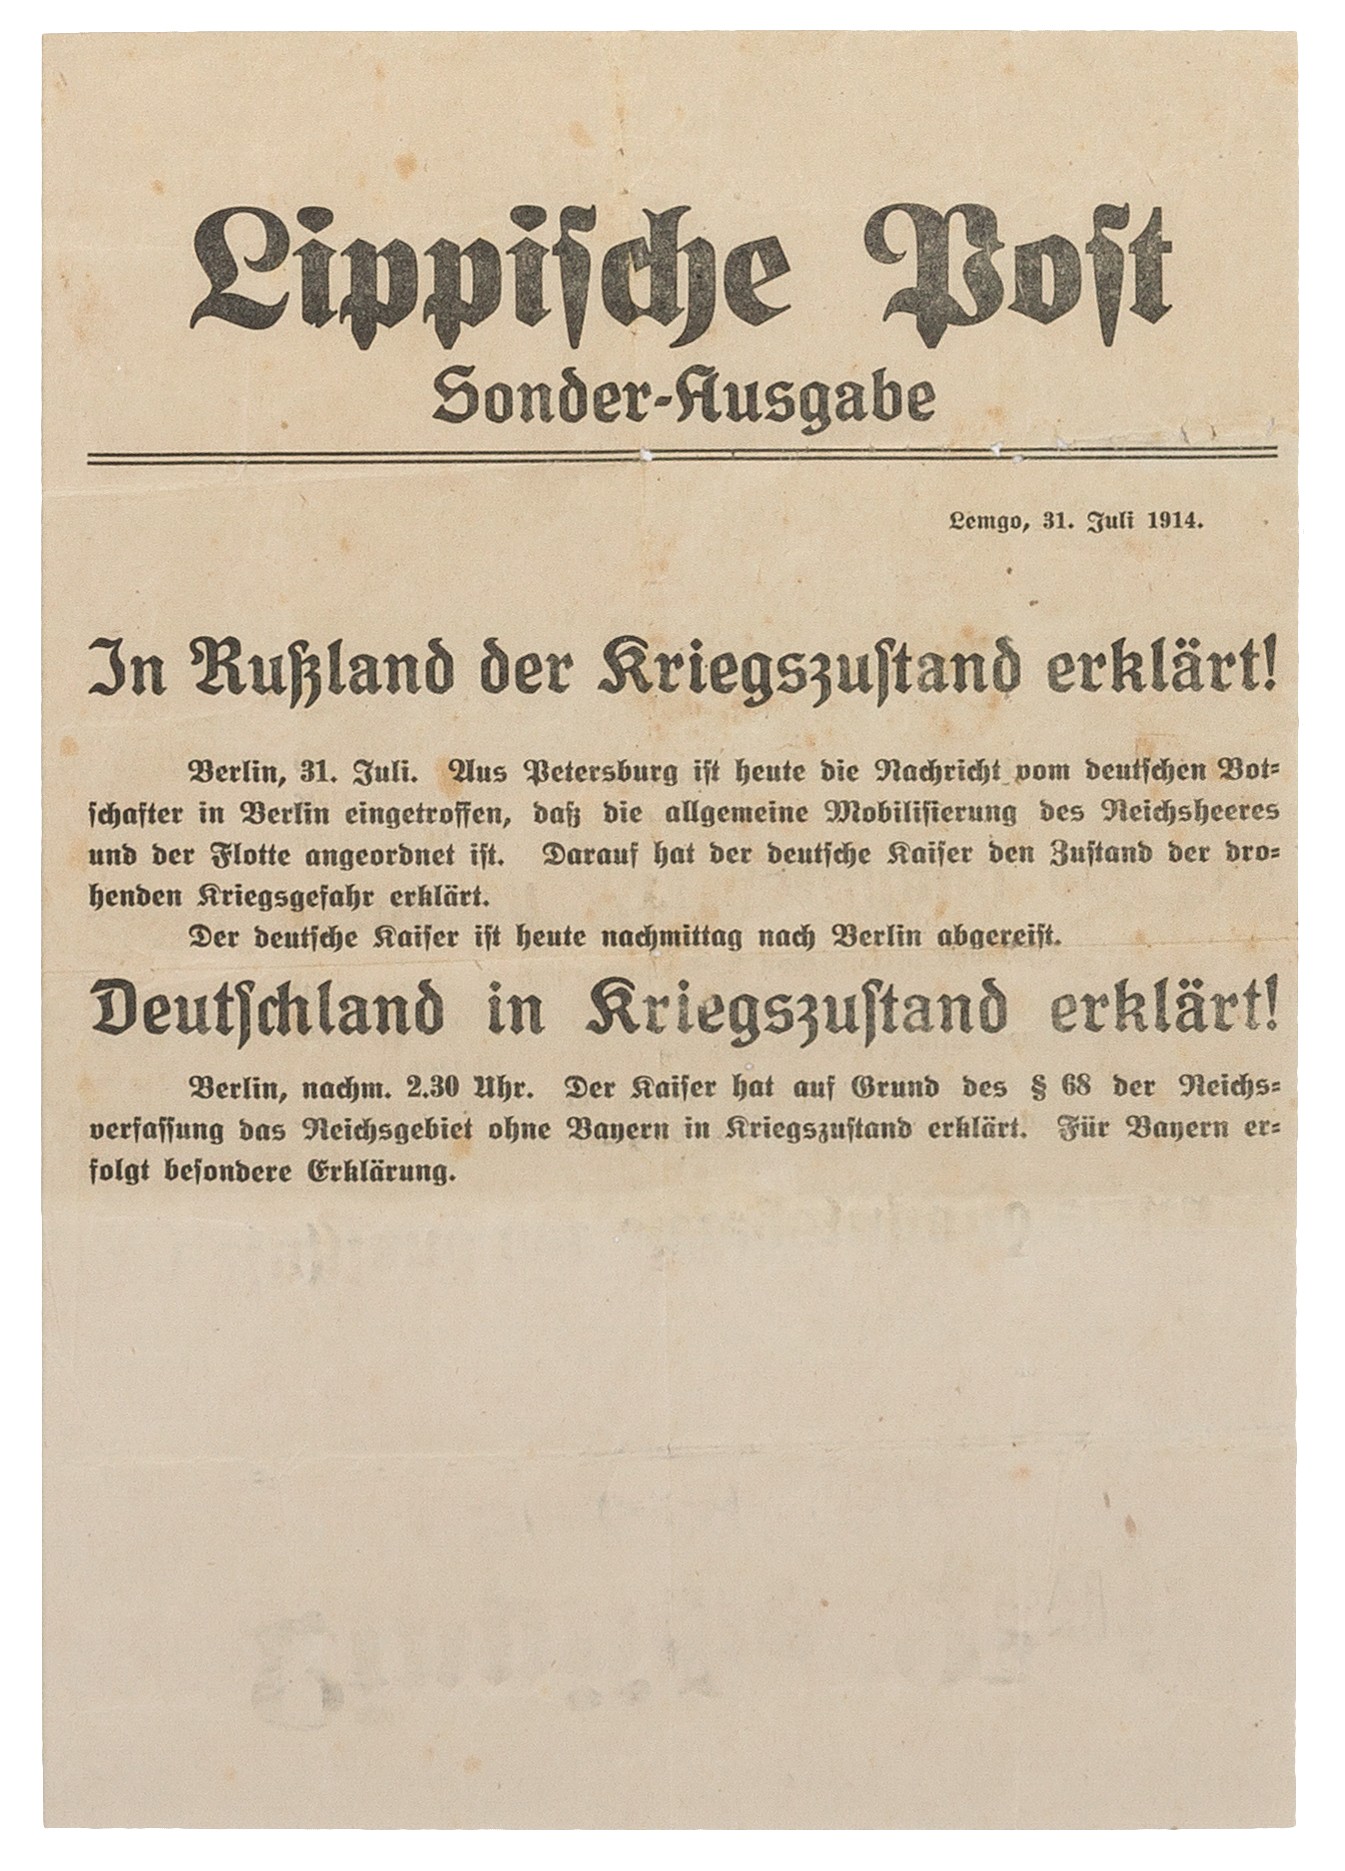 Sonderausgabe der Lippischen Post vom 31. Juli 1914 (Lippisches Landesmuseum Detmold CC BY-NC-SA)